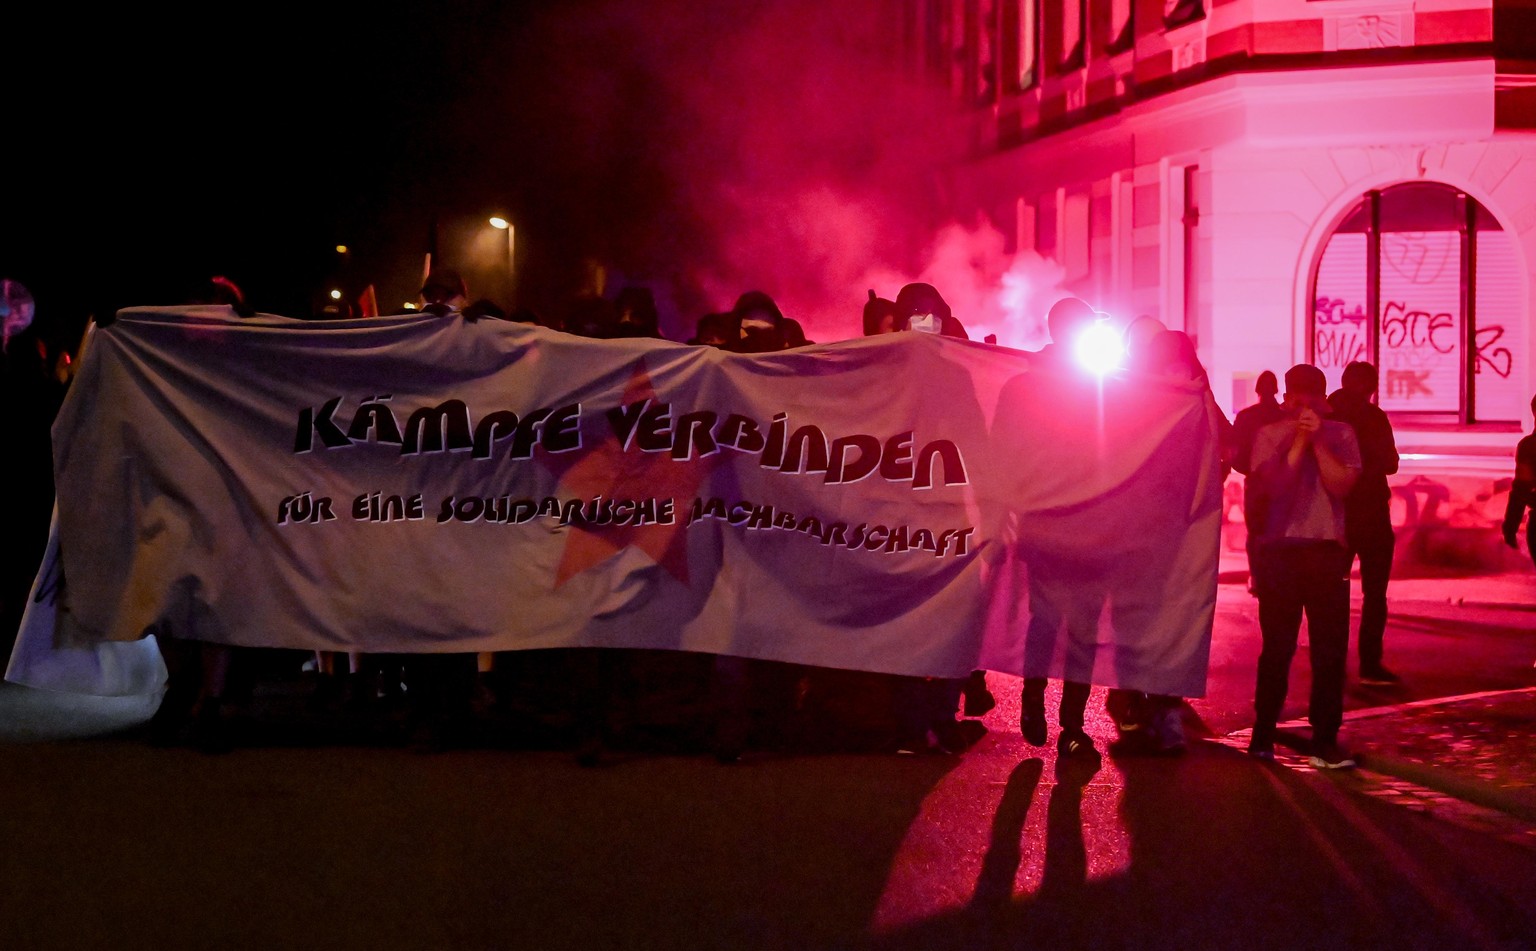 05.09.2020, Sachsen, Leipzig: Teilnehmer einer Demonstration ziehen durch den Stadtteil Connewitz in Leipzig. Die Demo steht unter dem Motto